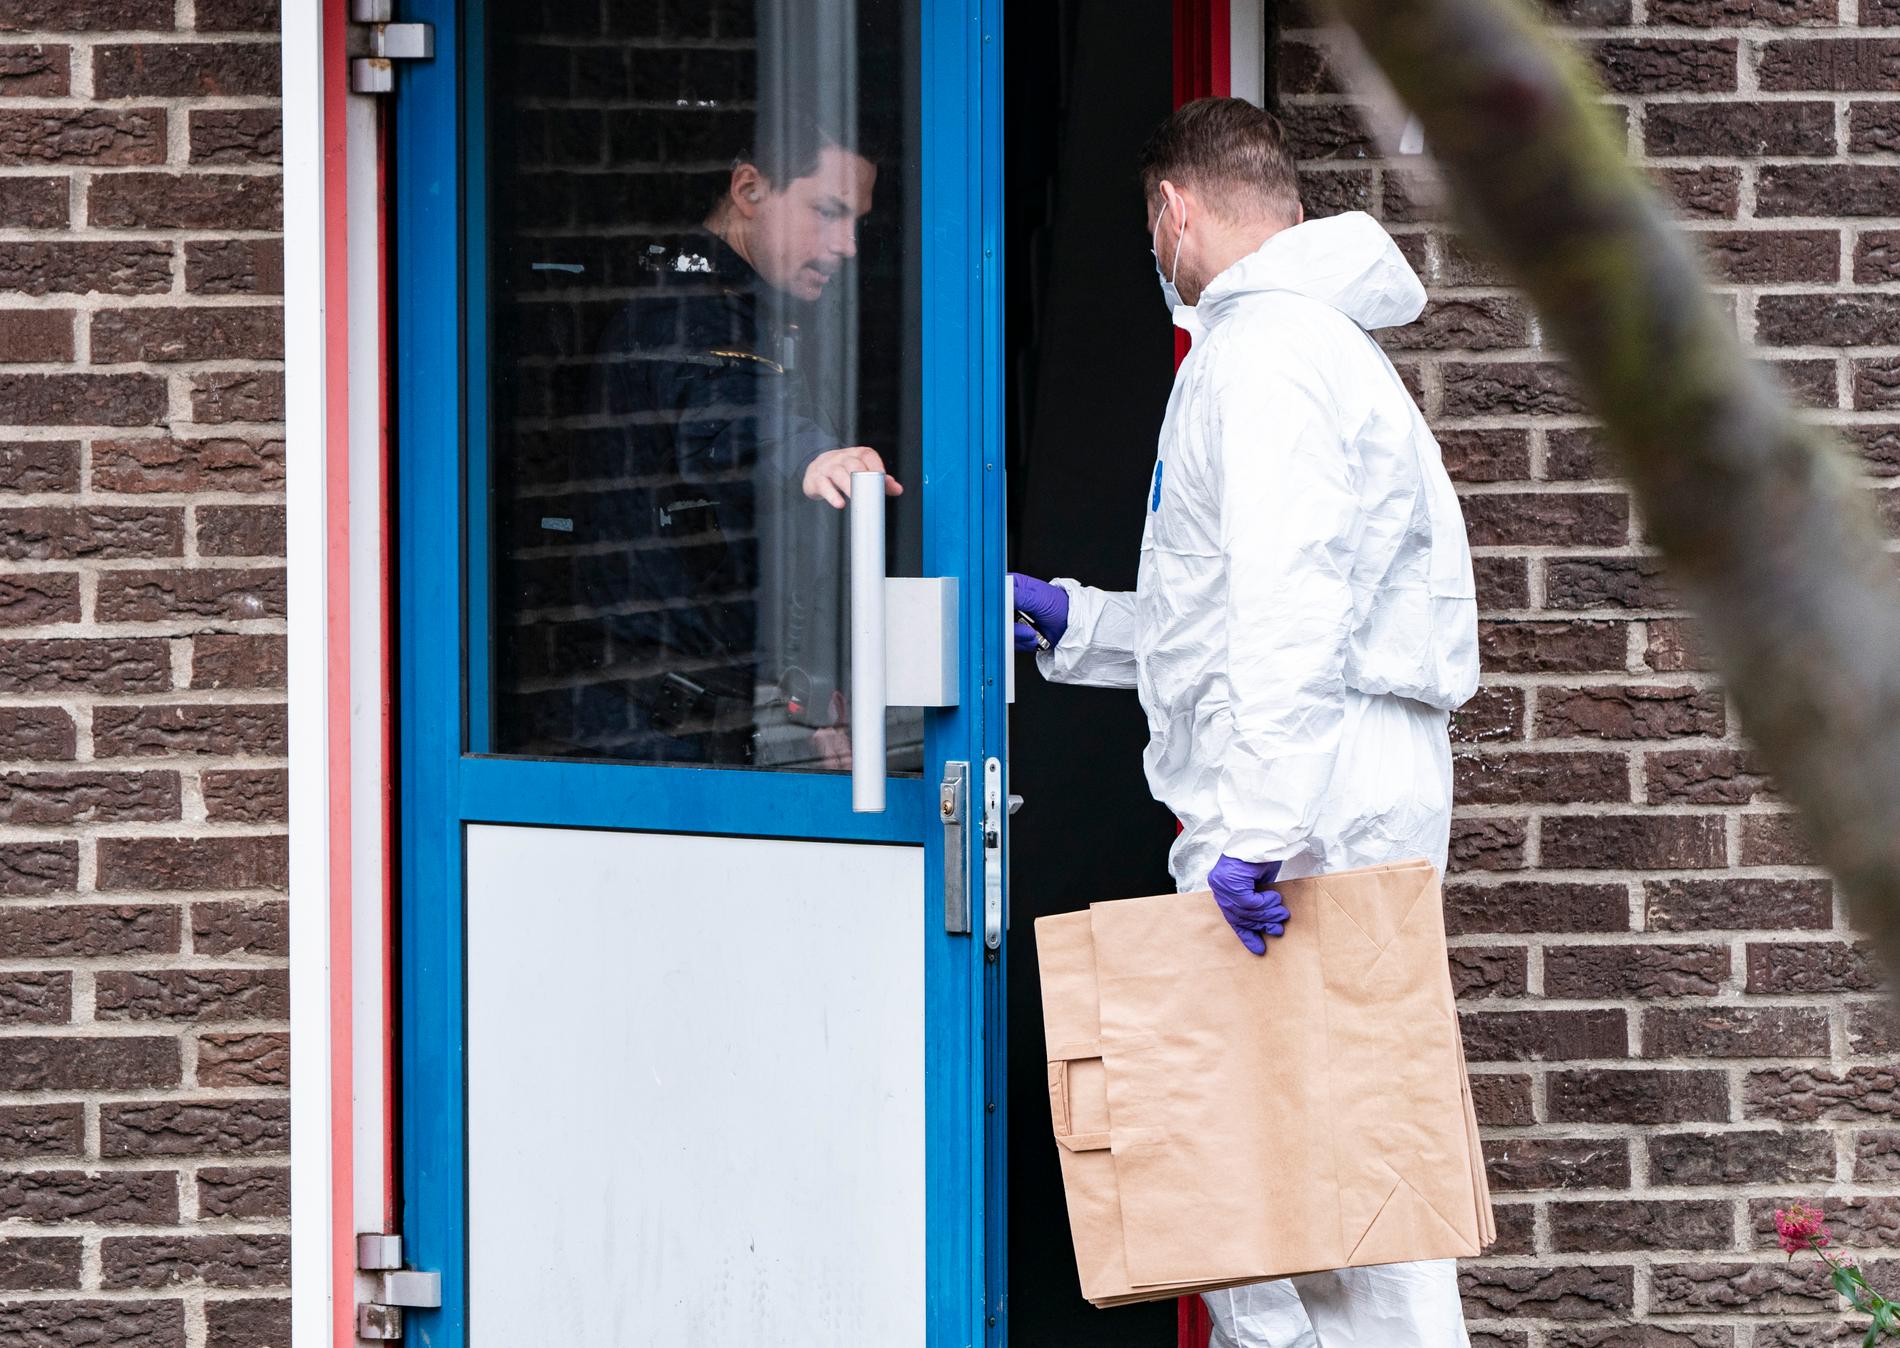 Polis och kriminaltekniker i Malmö efter en dödsskjutning på lördagsmorgonen.